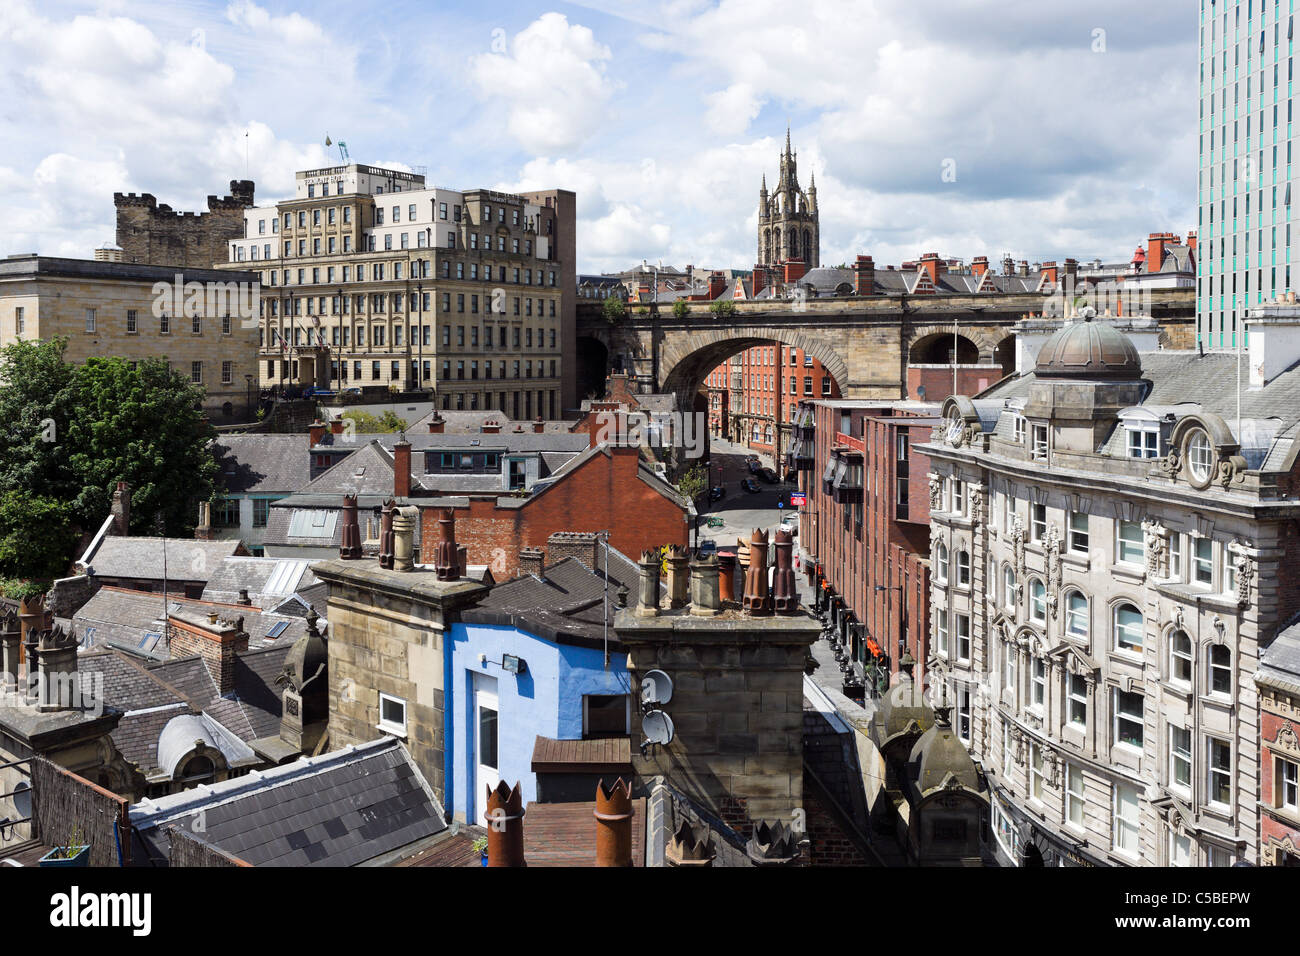 Los tejados de la ciudad desde el Puente Tyne mirando hacia la catedral, Newcastle upon Tyne Tyne y desgaste, UK Foto de stock